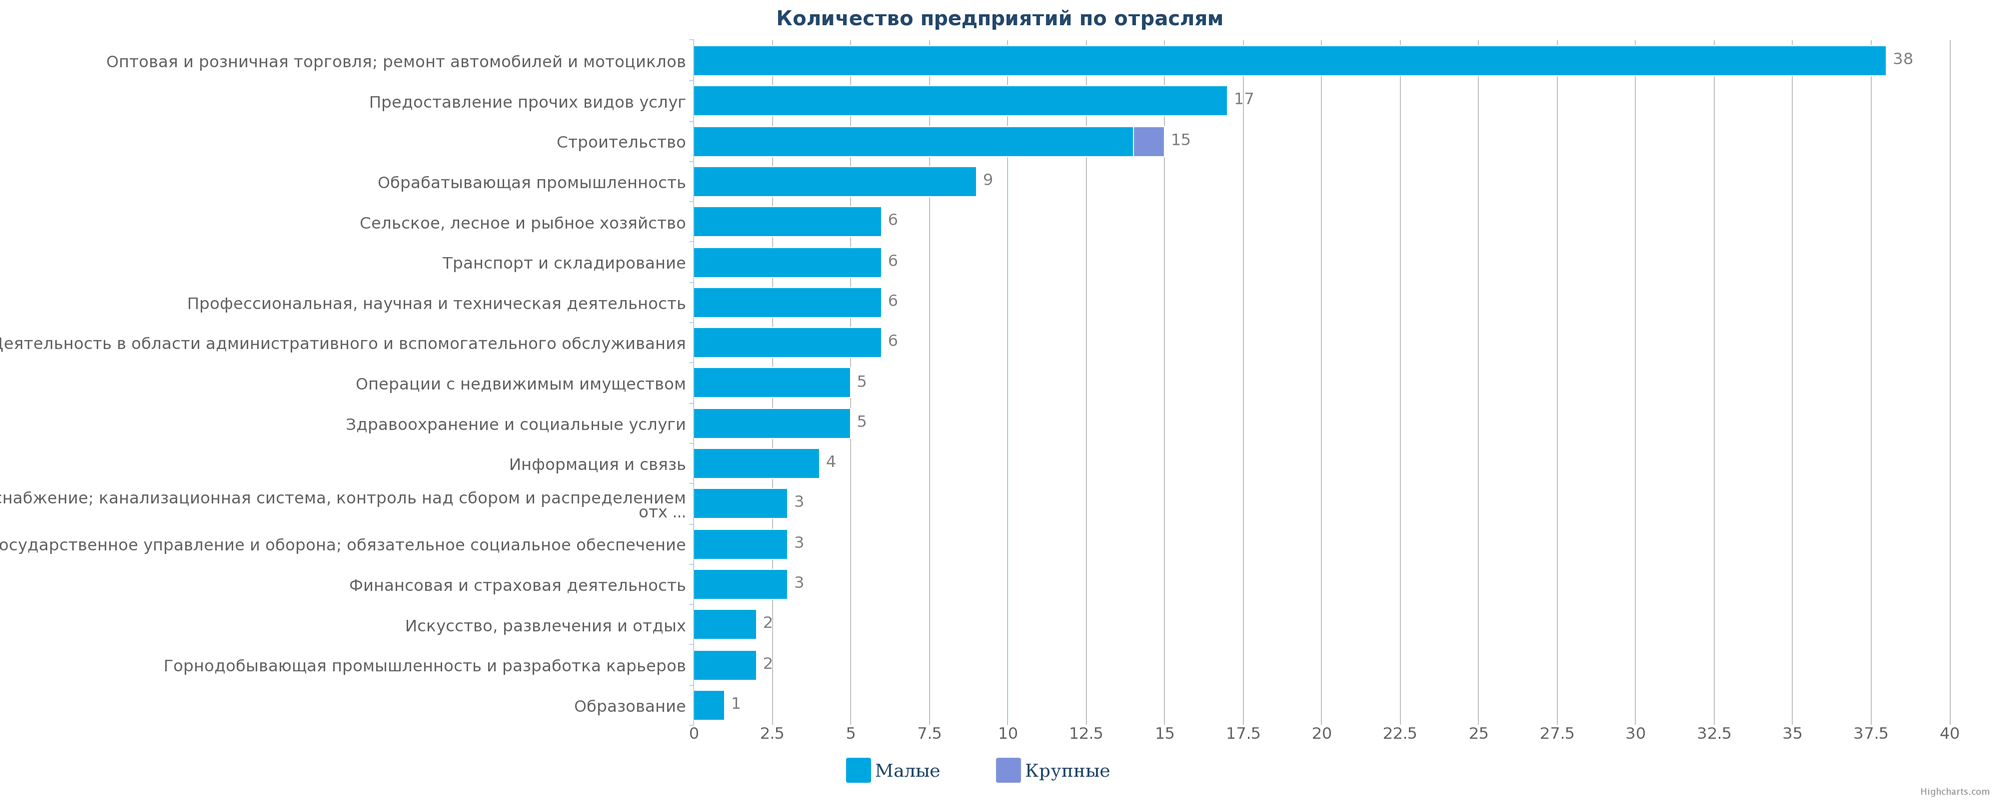 Количество ликвидированных организаций по отраслям